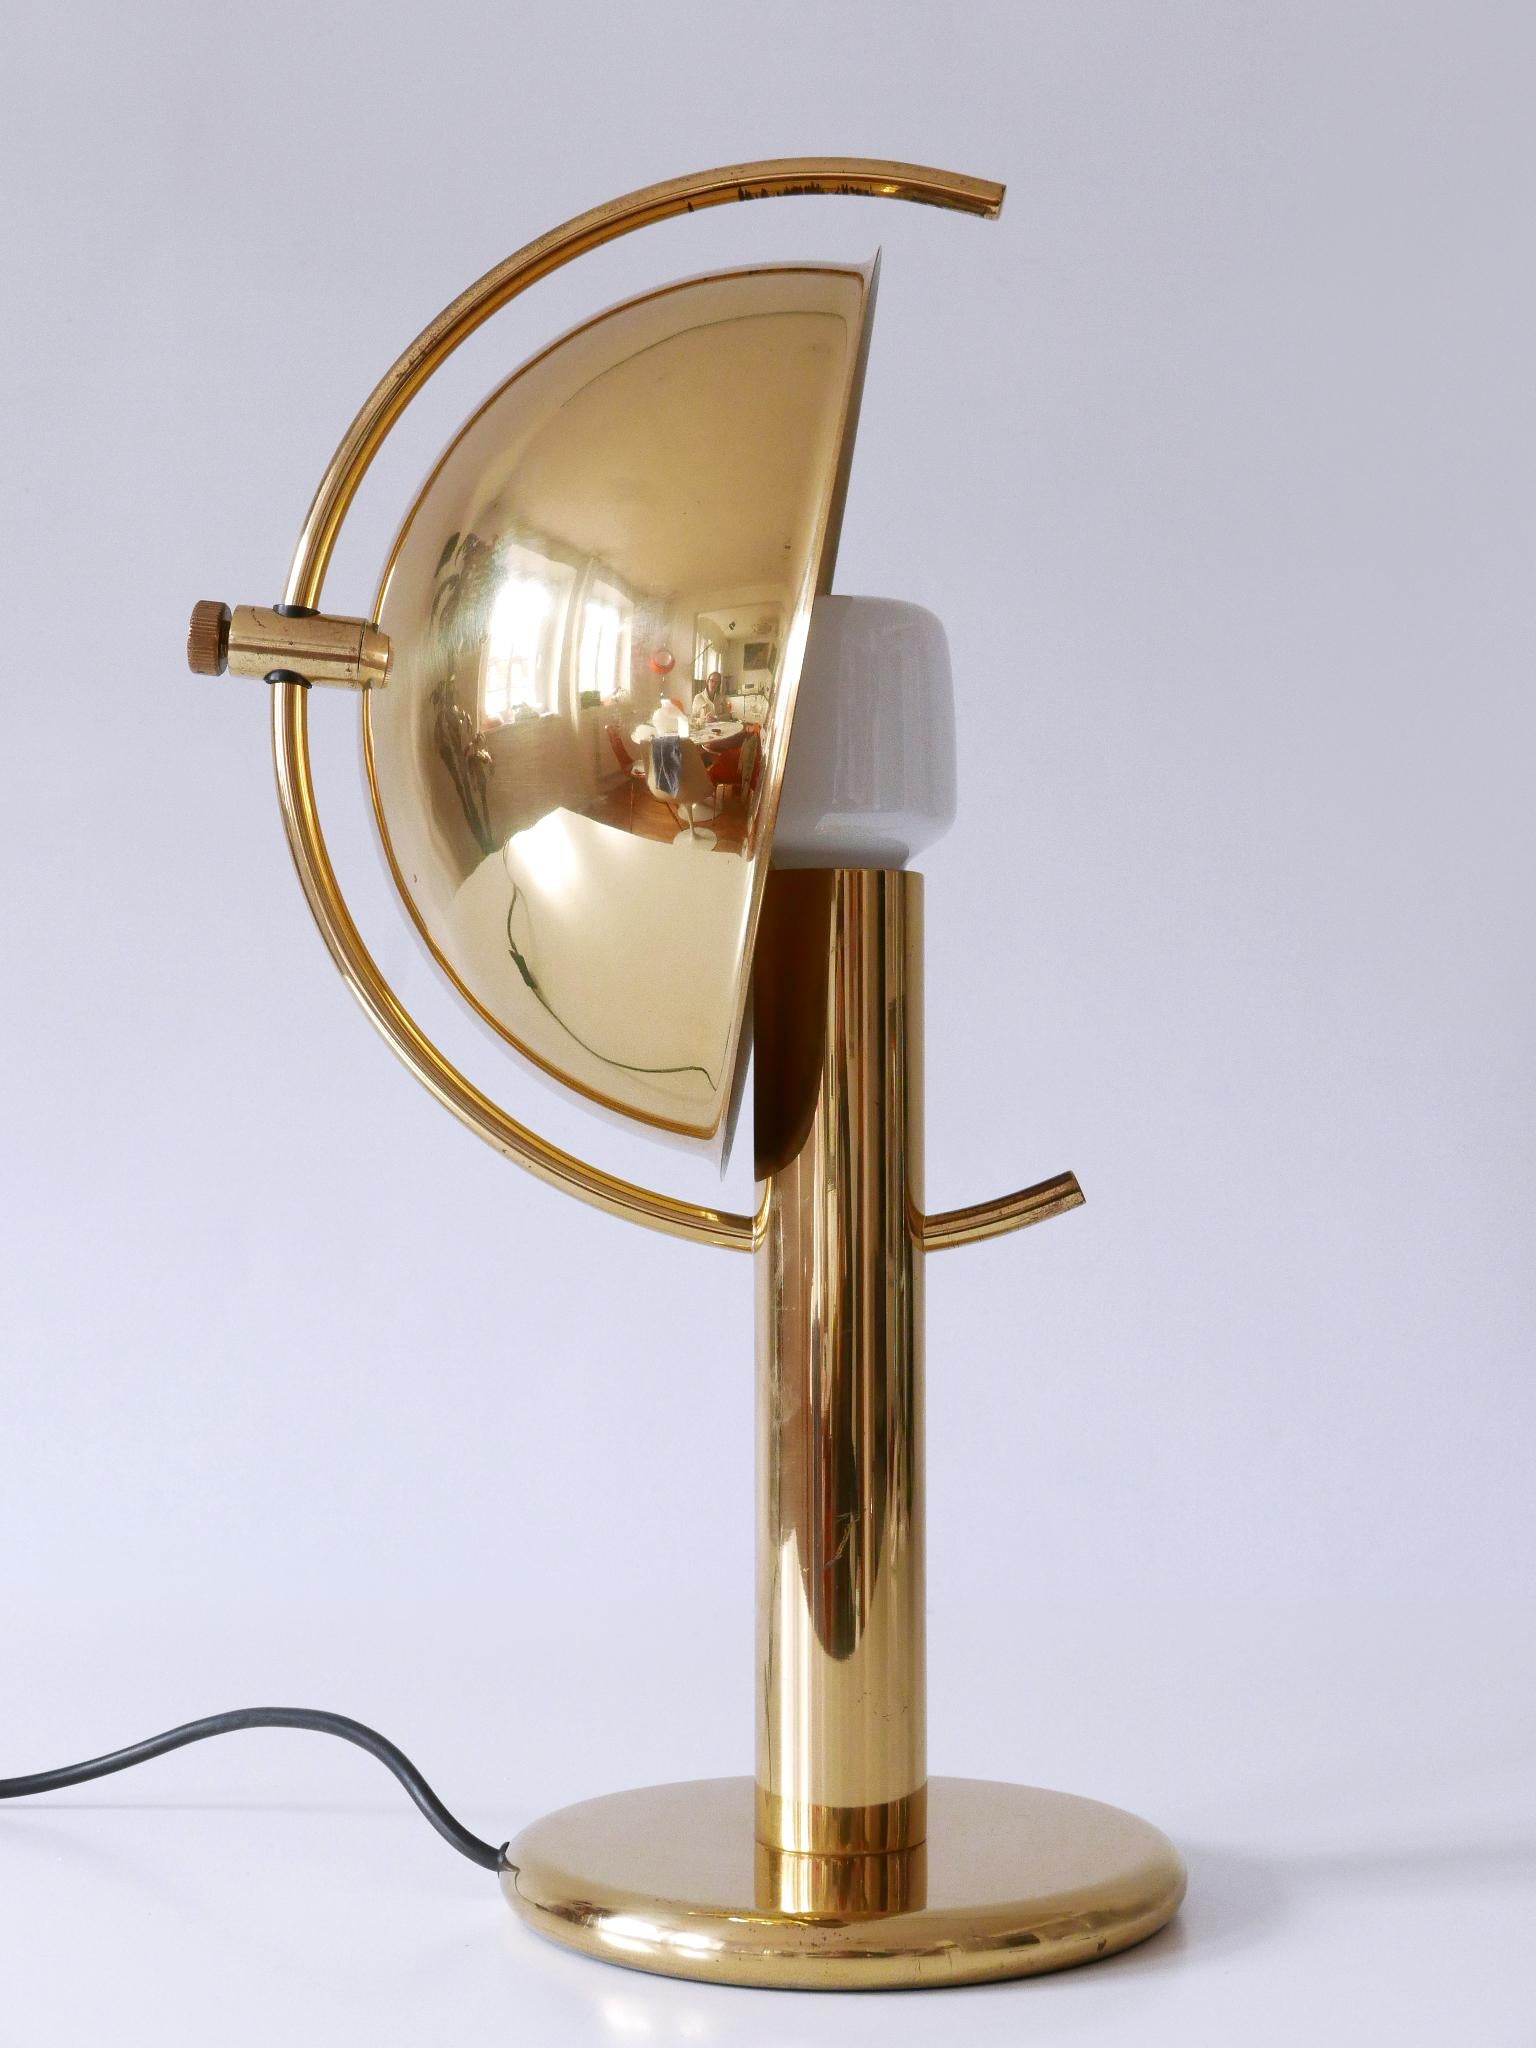 Außergewöhnliche, elegante und sehr dekorative Mid-Century Modern Tischlampe aus Messing mit verstellbarem Lampenschirm. Entworfen und hergestellt von Gebrüder Cosack, Deutschland, 1960er Jahre.

Die aus massivem Messingblech und -rohr gefertigte